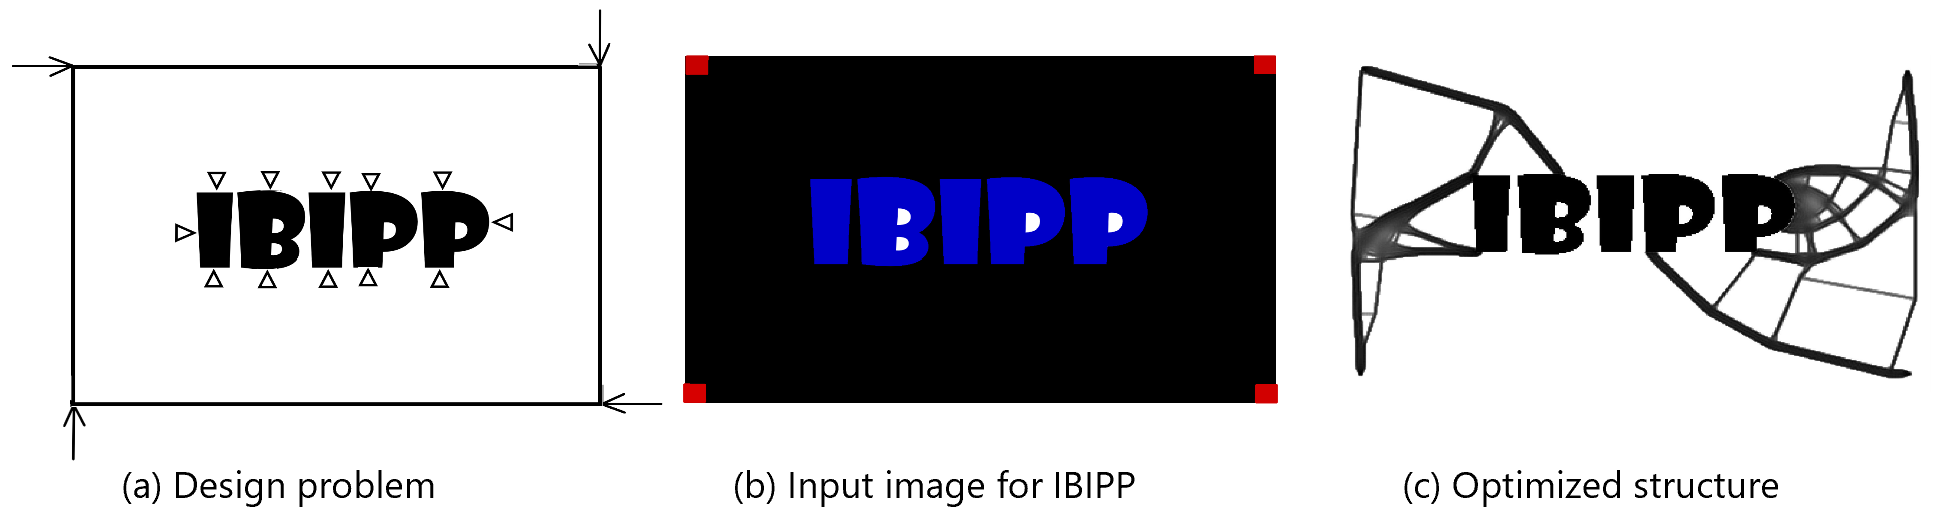 IBIPP problem